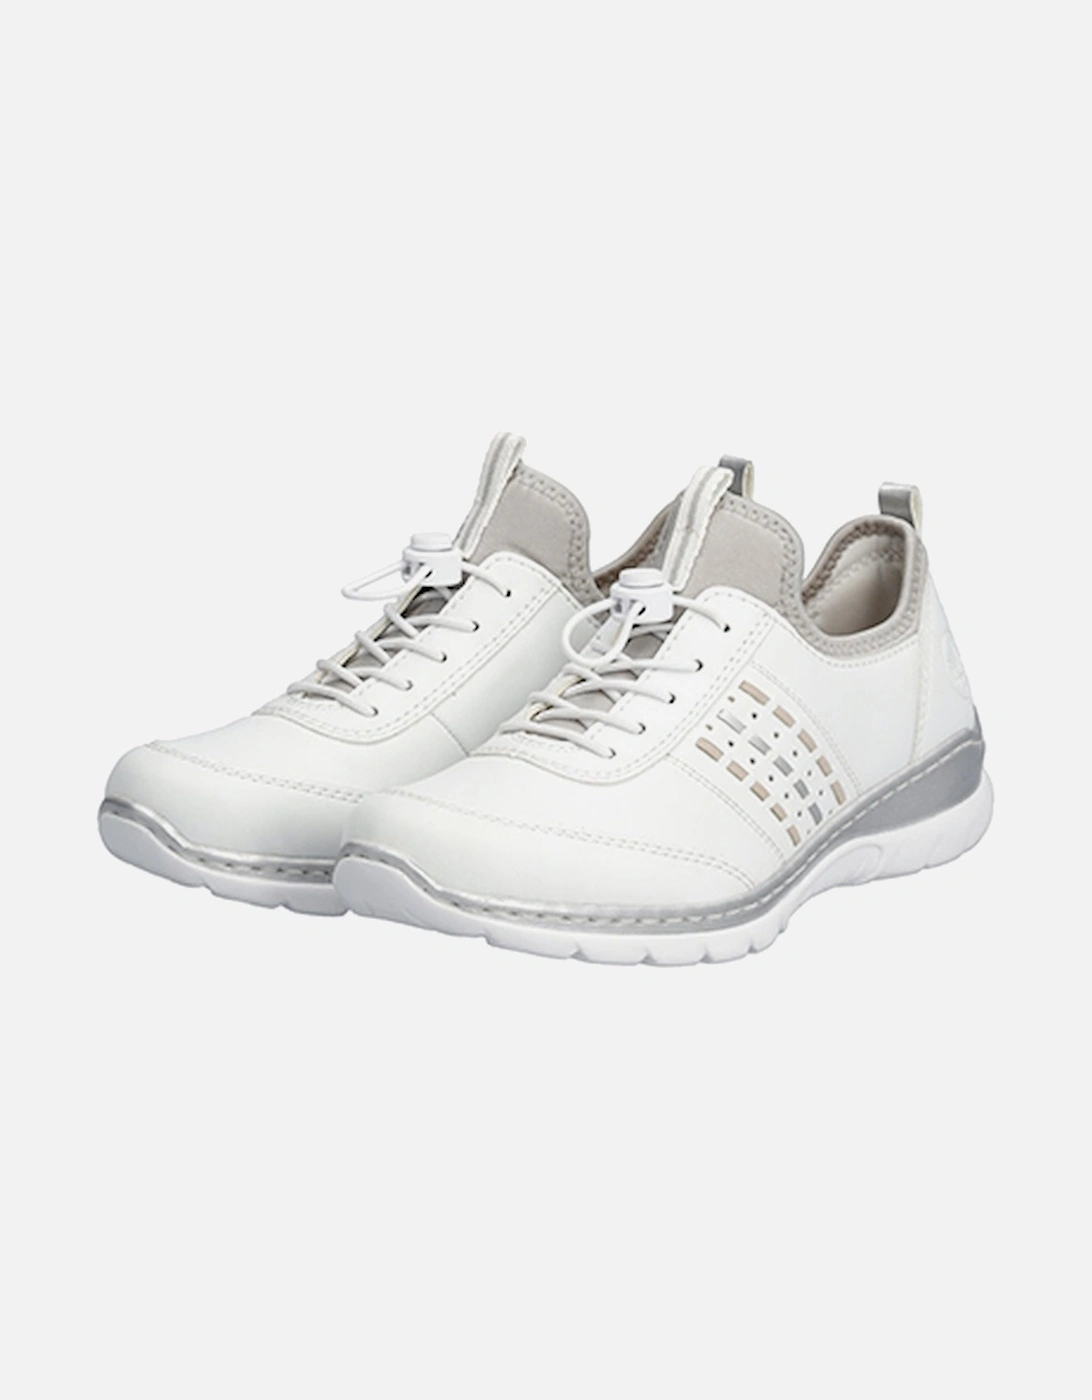 L3259-80 Women's Shoe White